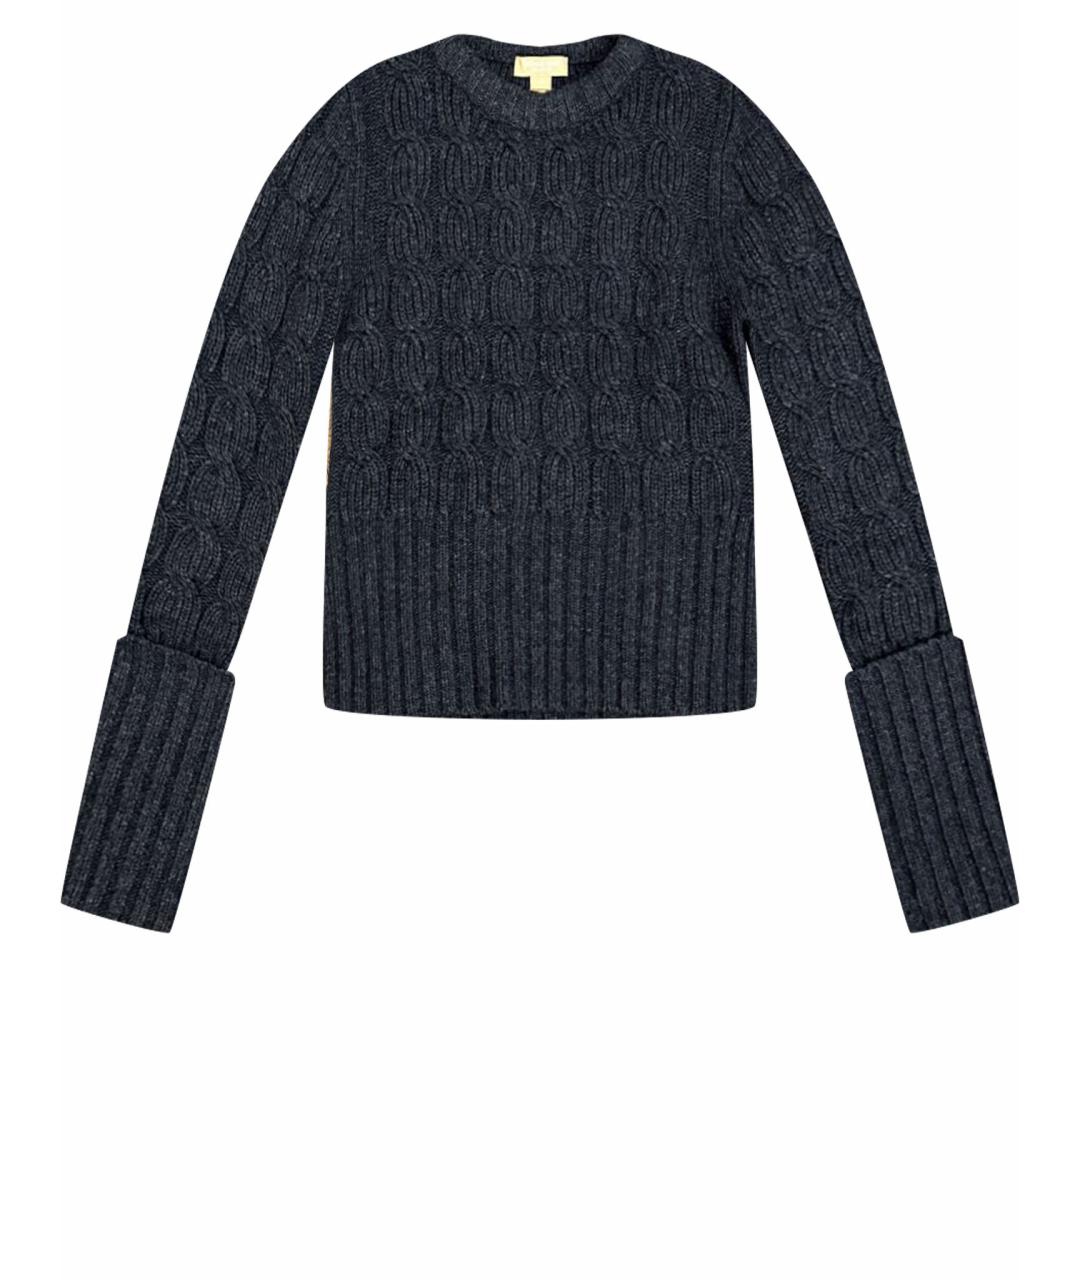 MICHAEL KORS Серый шерстяной джемпер / свитер, фото 1